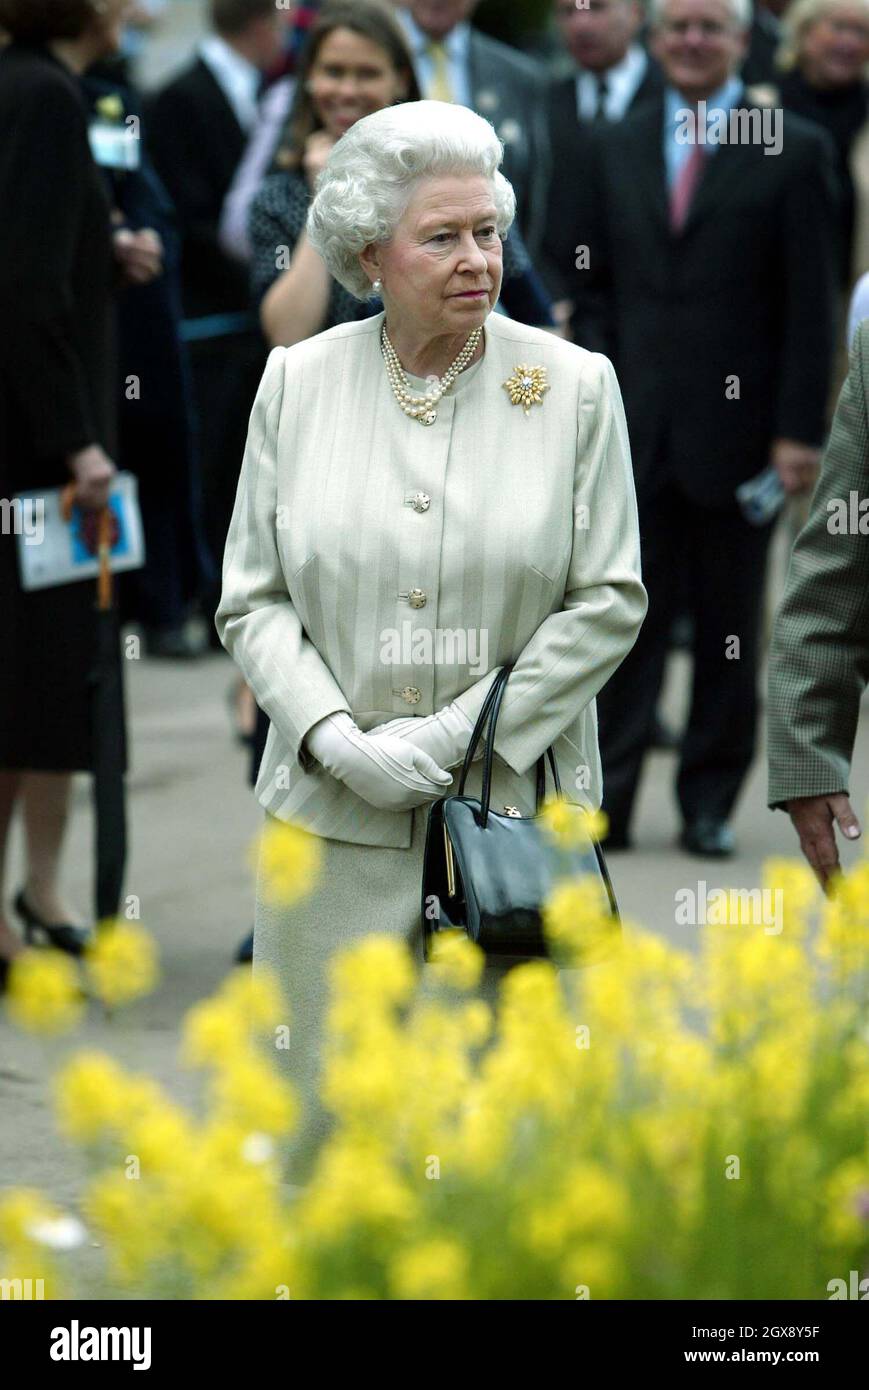 La Reine examine des expositions lors de sa visite au Chelsea Flower Show de la Royal Horticultural Society à Londres.Demi-longueur, Royals©Anwar Hussein/allaction.co.uk Banque D'Images